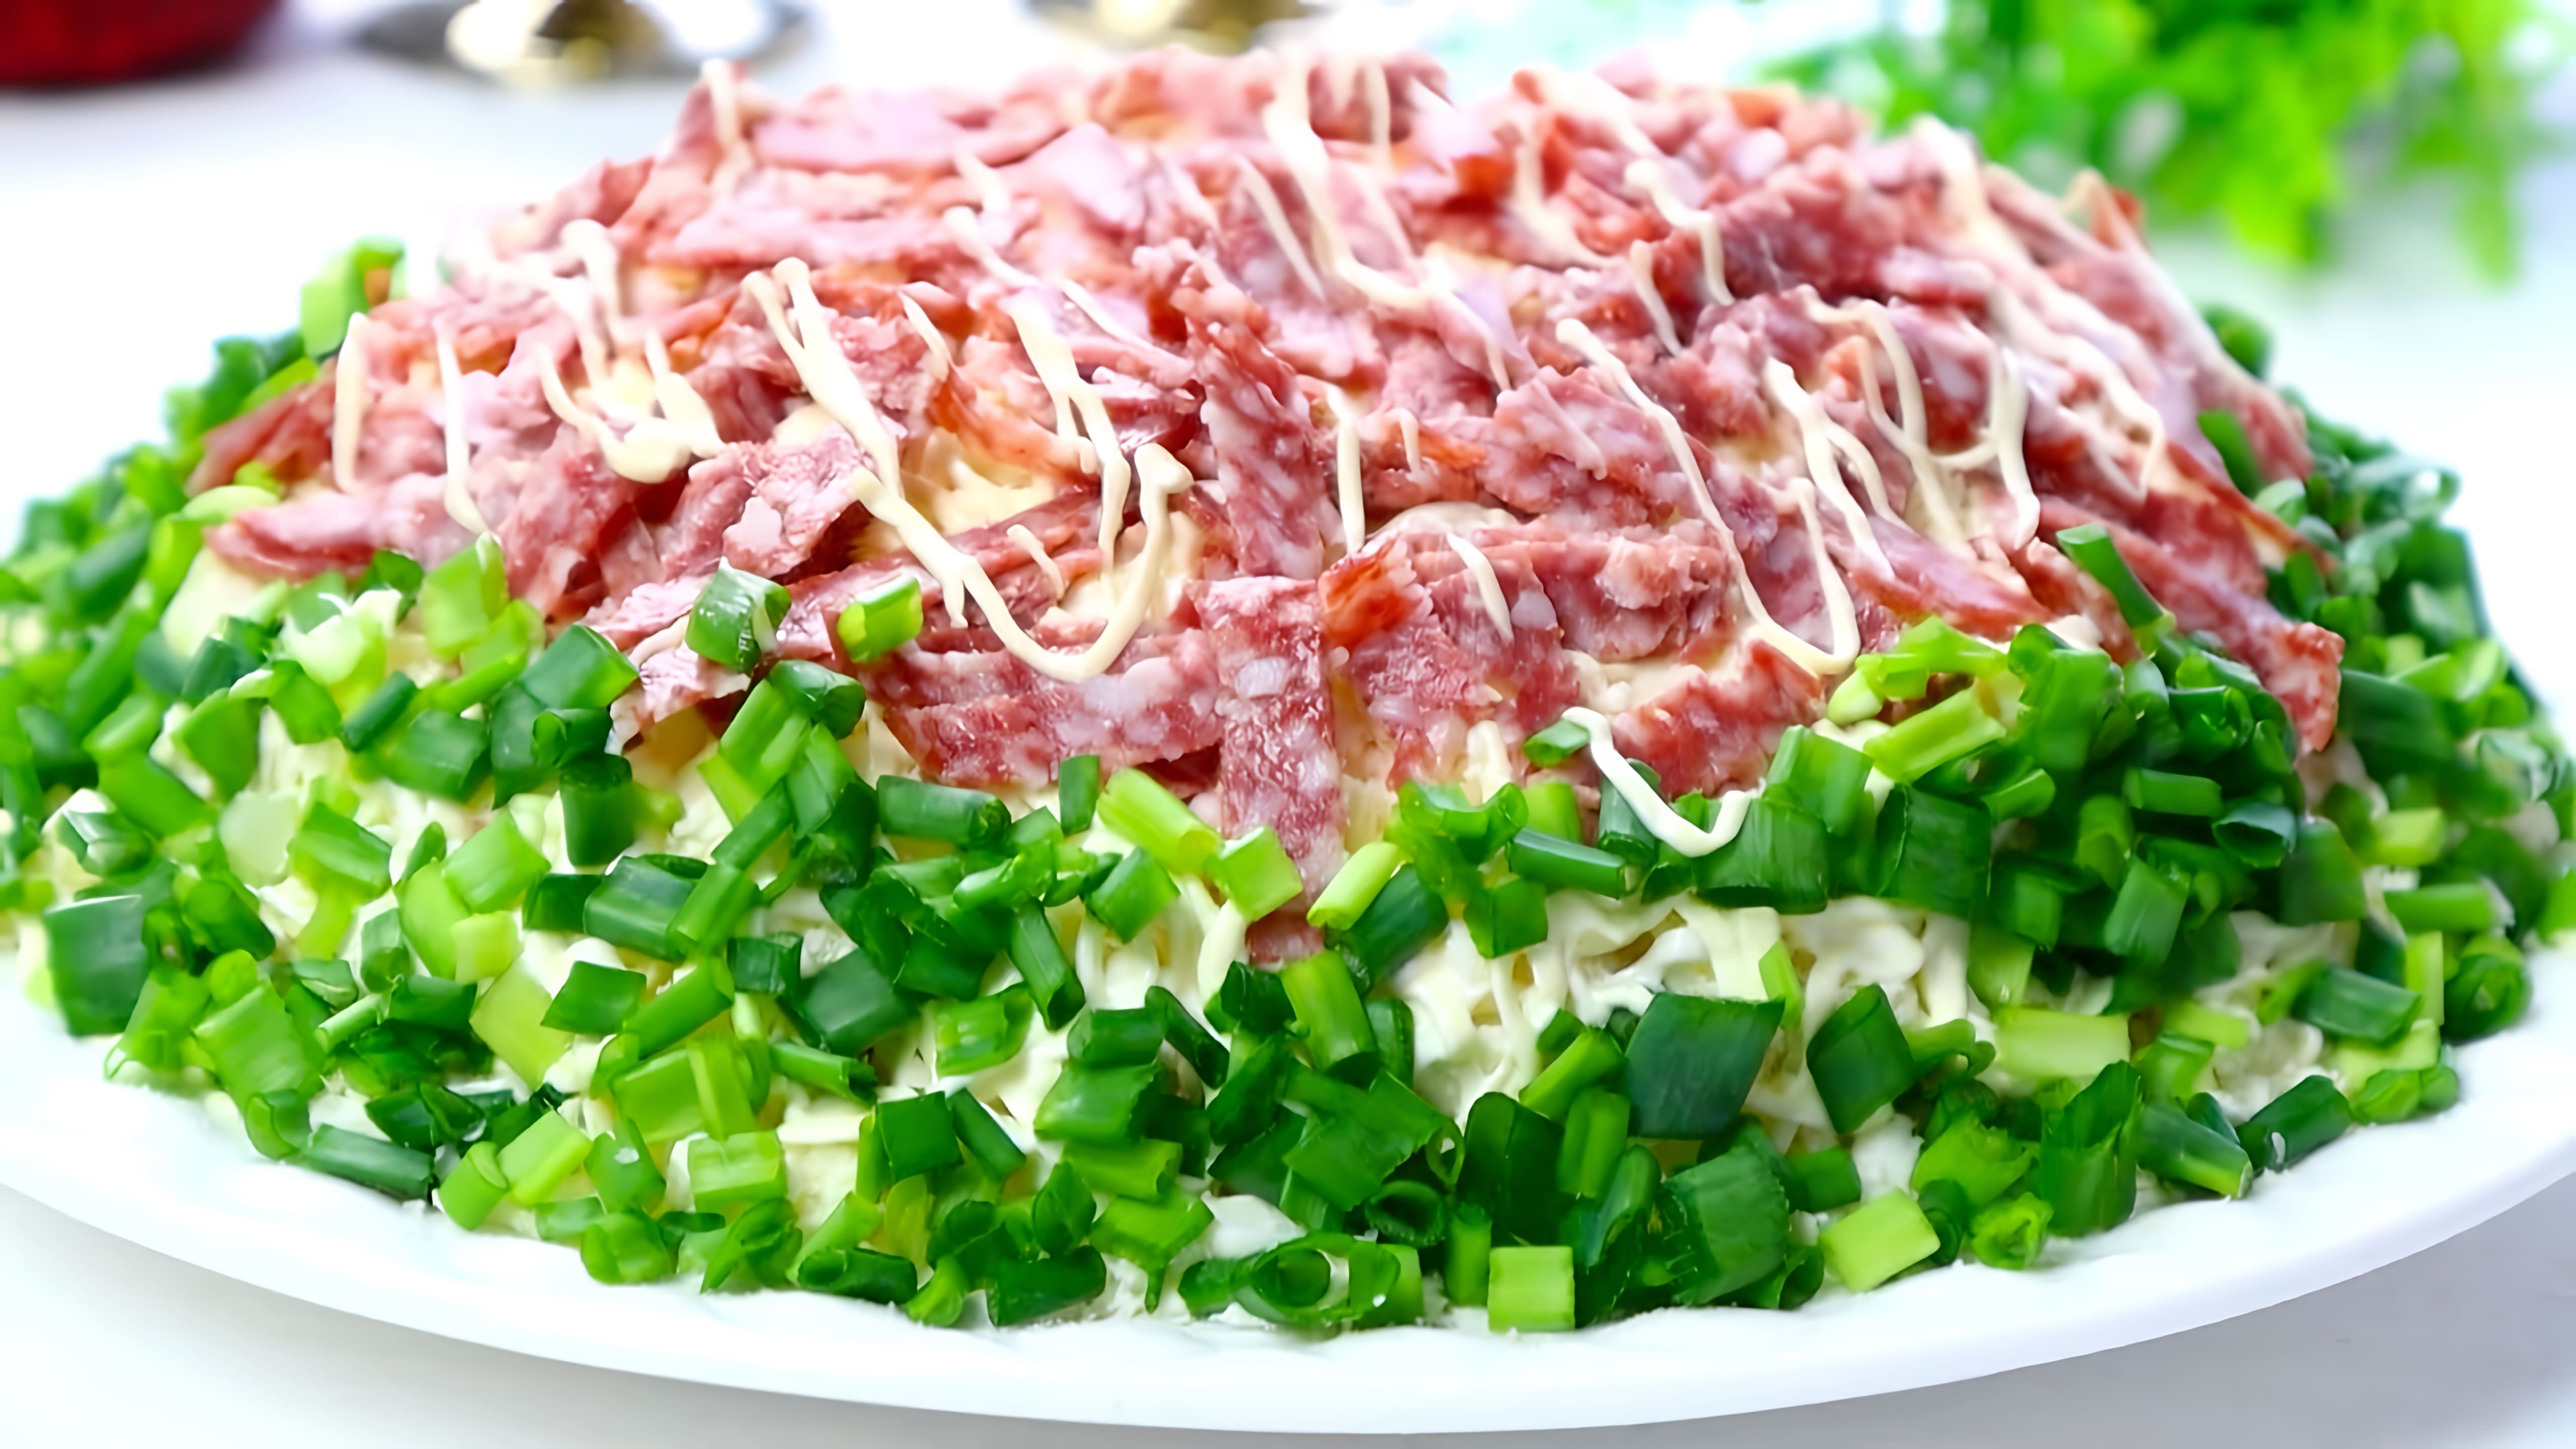 В этом видео демонстрируется процесс приготовления праздничного мясного салата "Довольный мужчина"